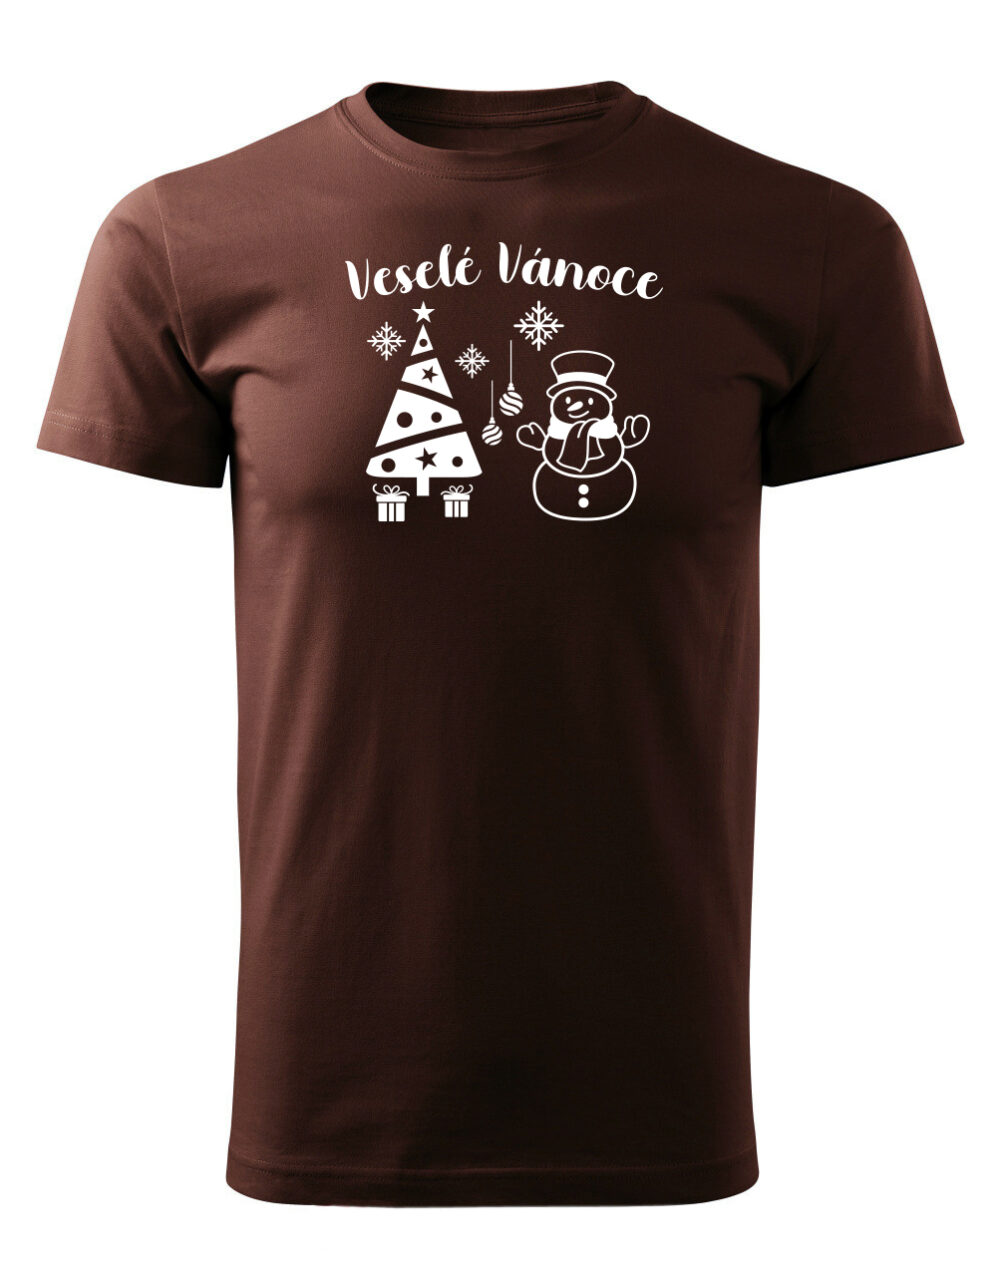 Pánské tričko s potiskem Veselé vánoce čokoládová